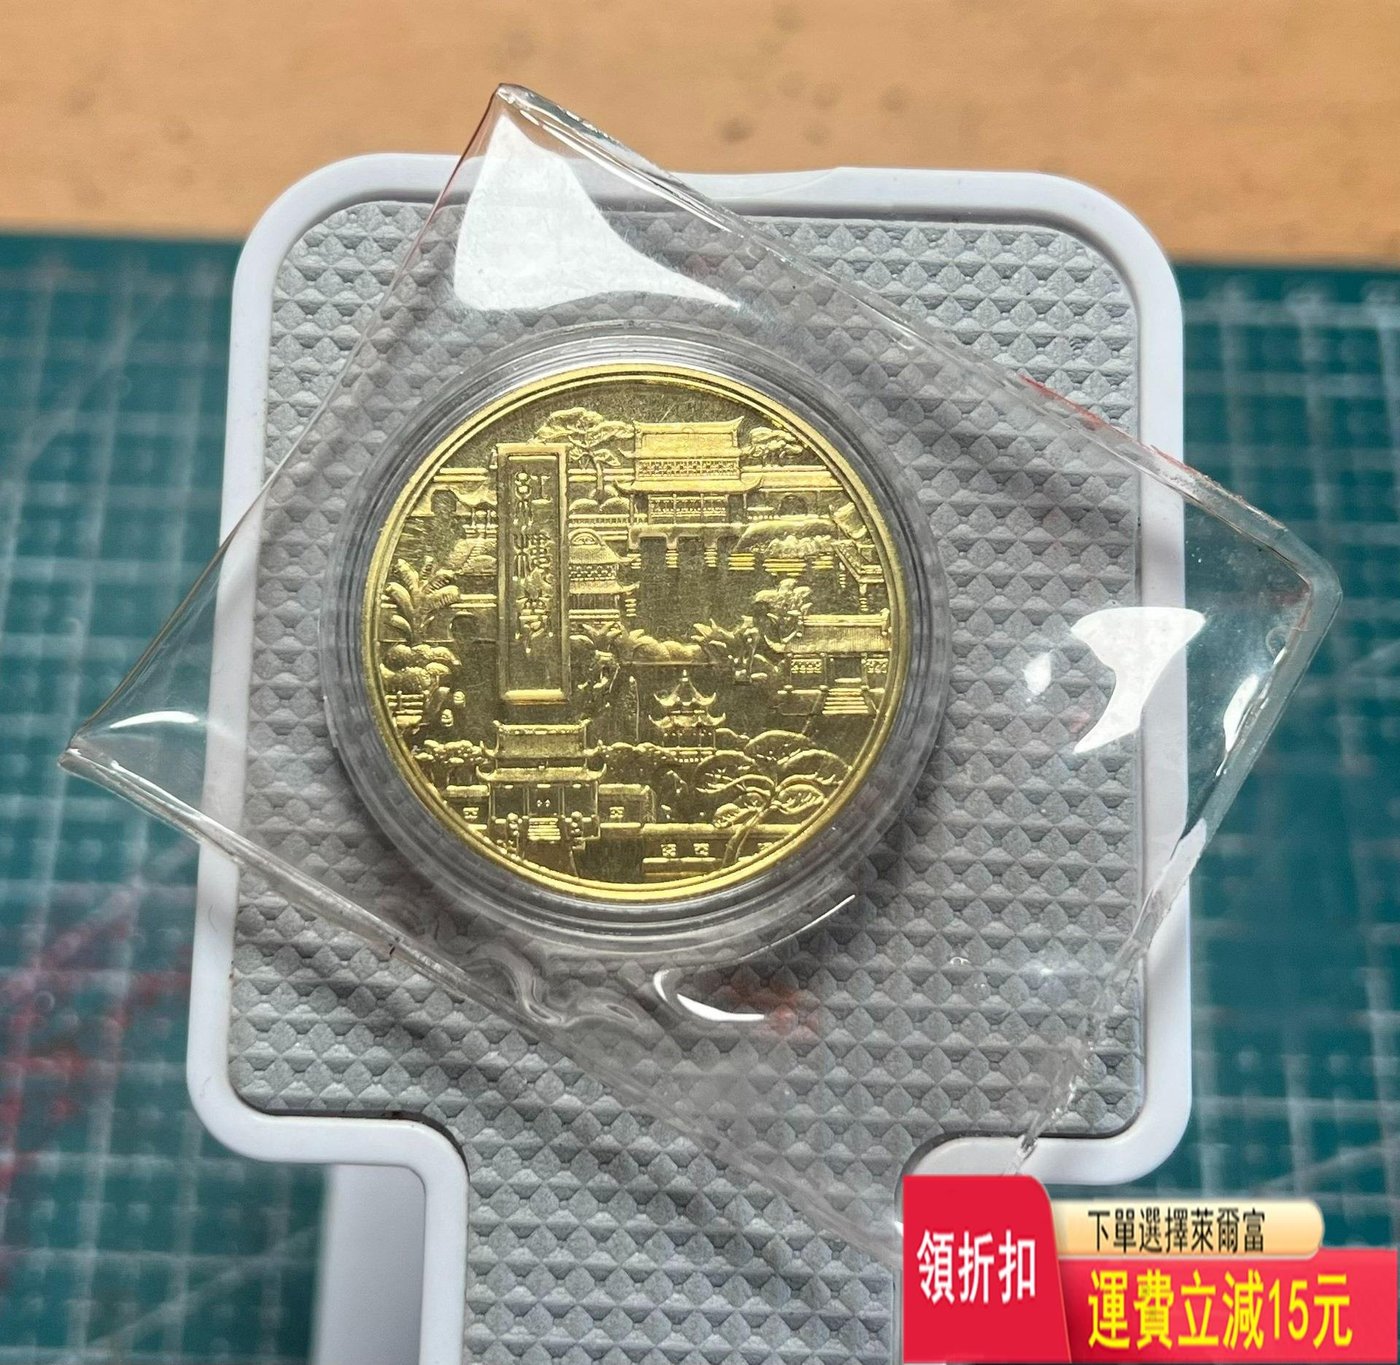 上海造幣廠1983年曹雪芹本銅精制紀念章小銅章，直徑36mm 可議價評級幣